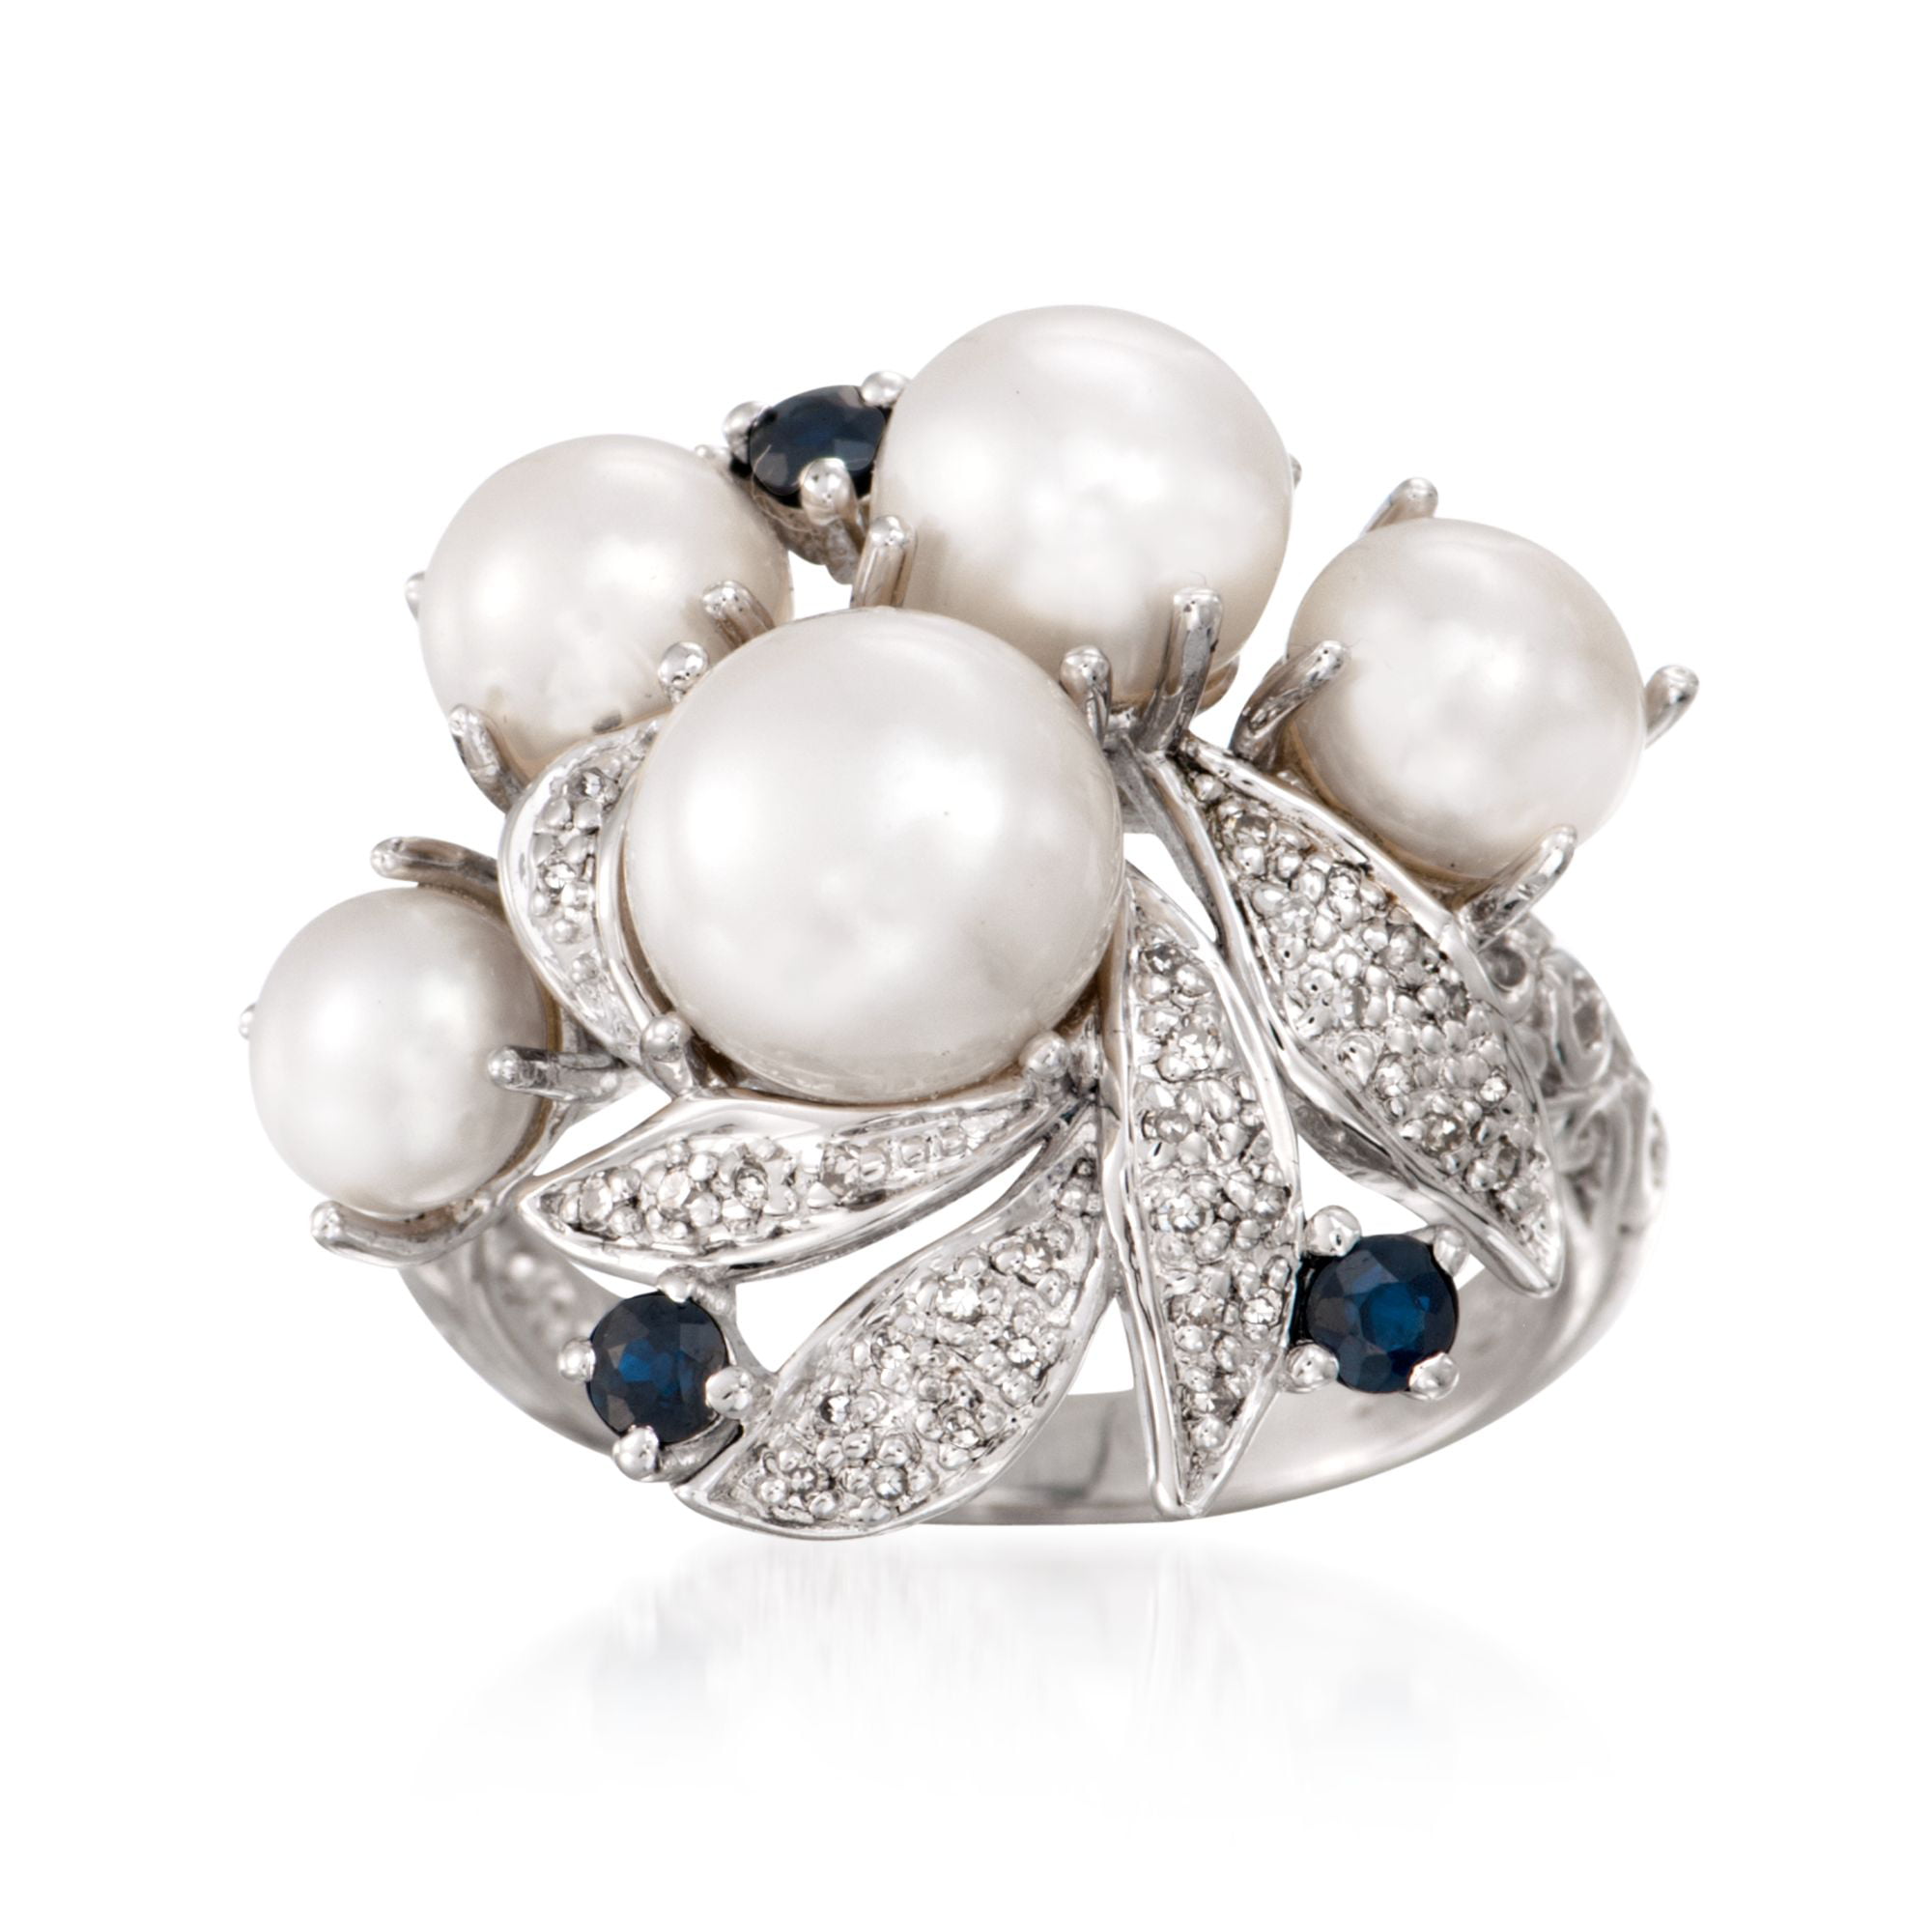 Details about   Art Deco 925 Silver 2.70 Ct White Diamond Blue Sapphire Vintage Antique Ring 